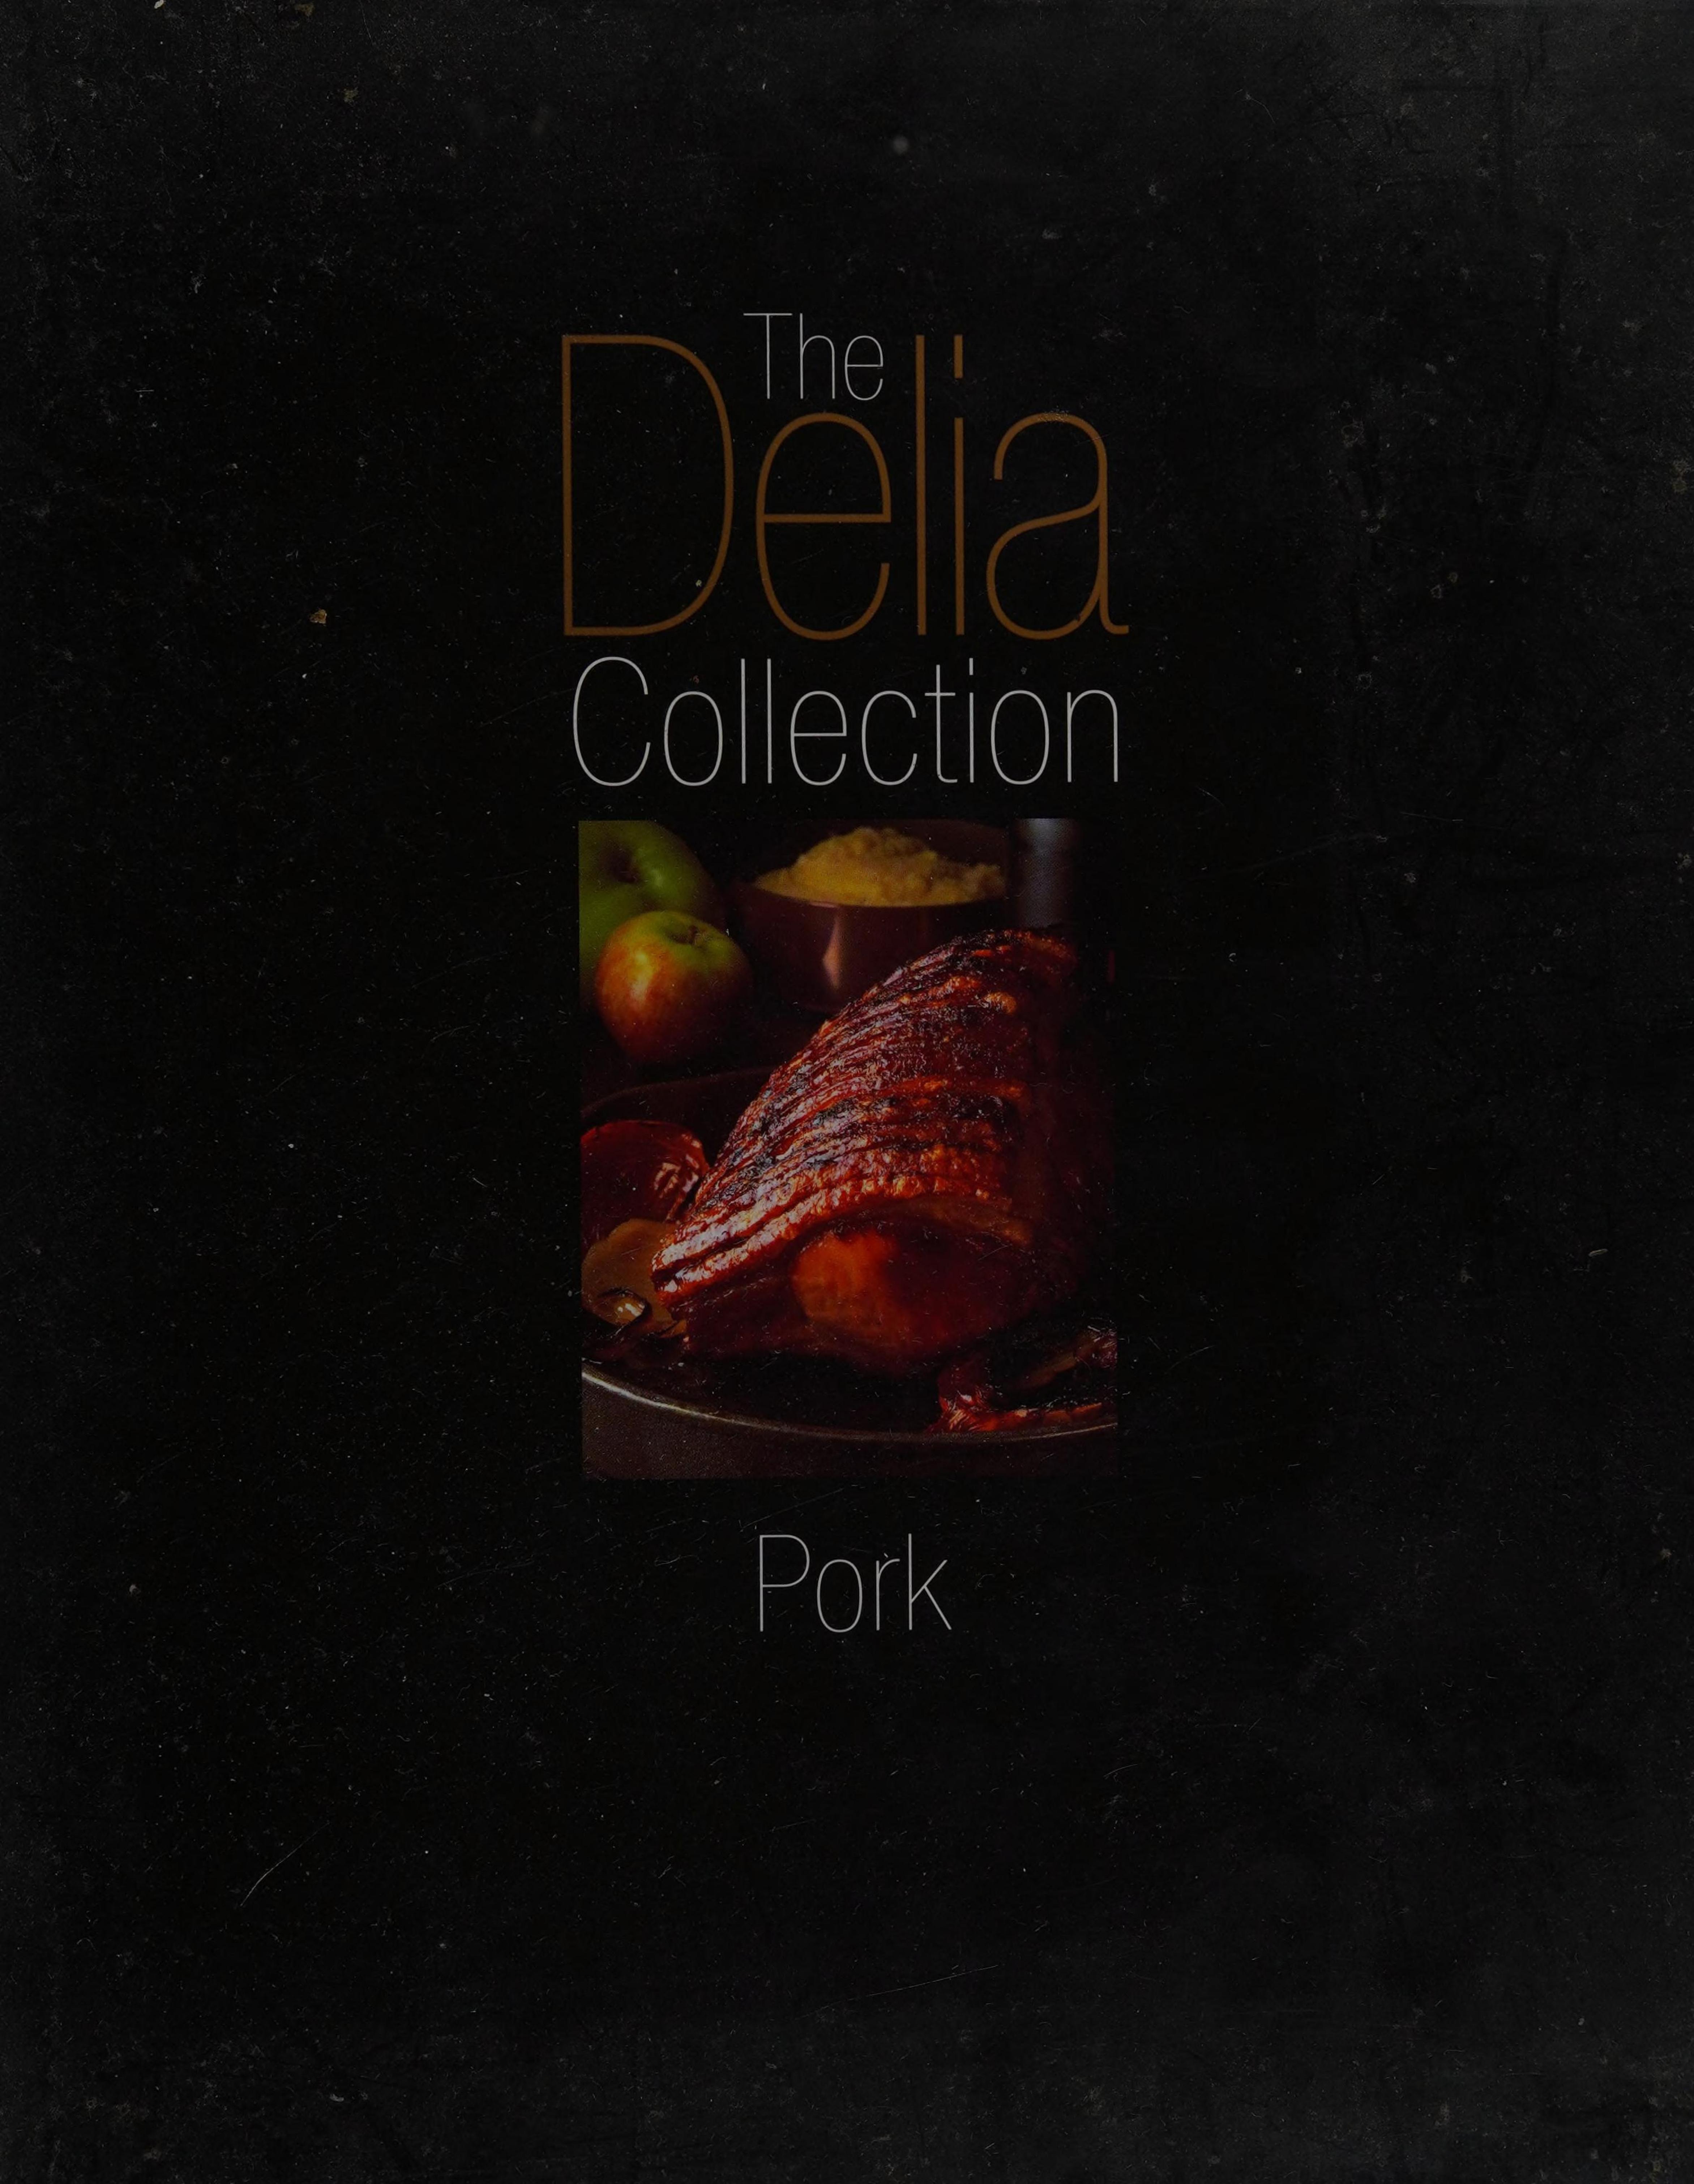 The Delia Collection: Pork by Delia Smith